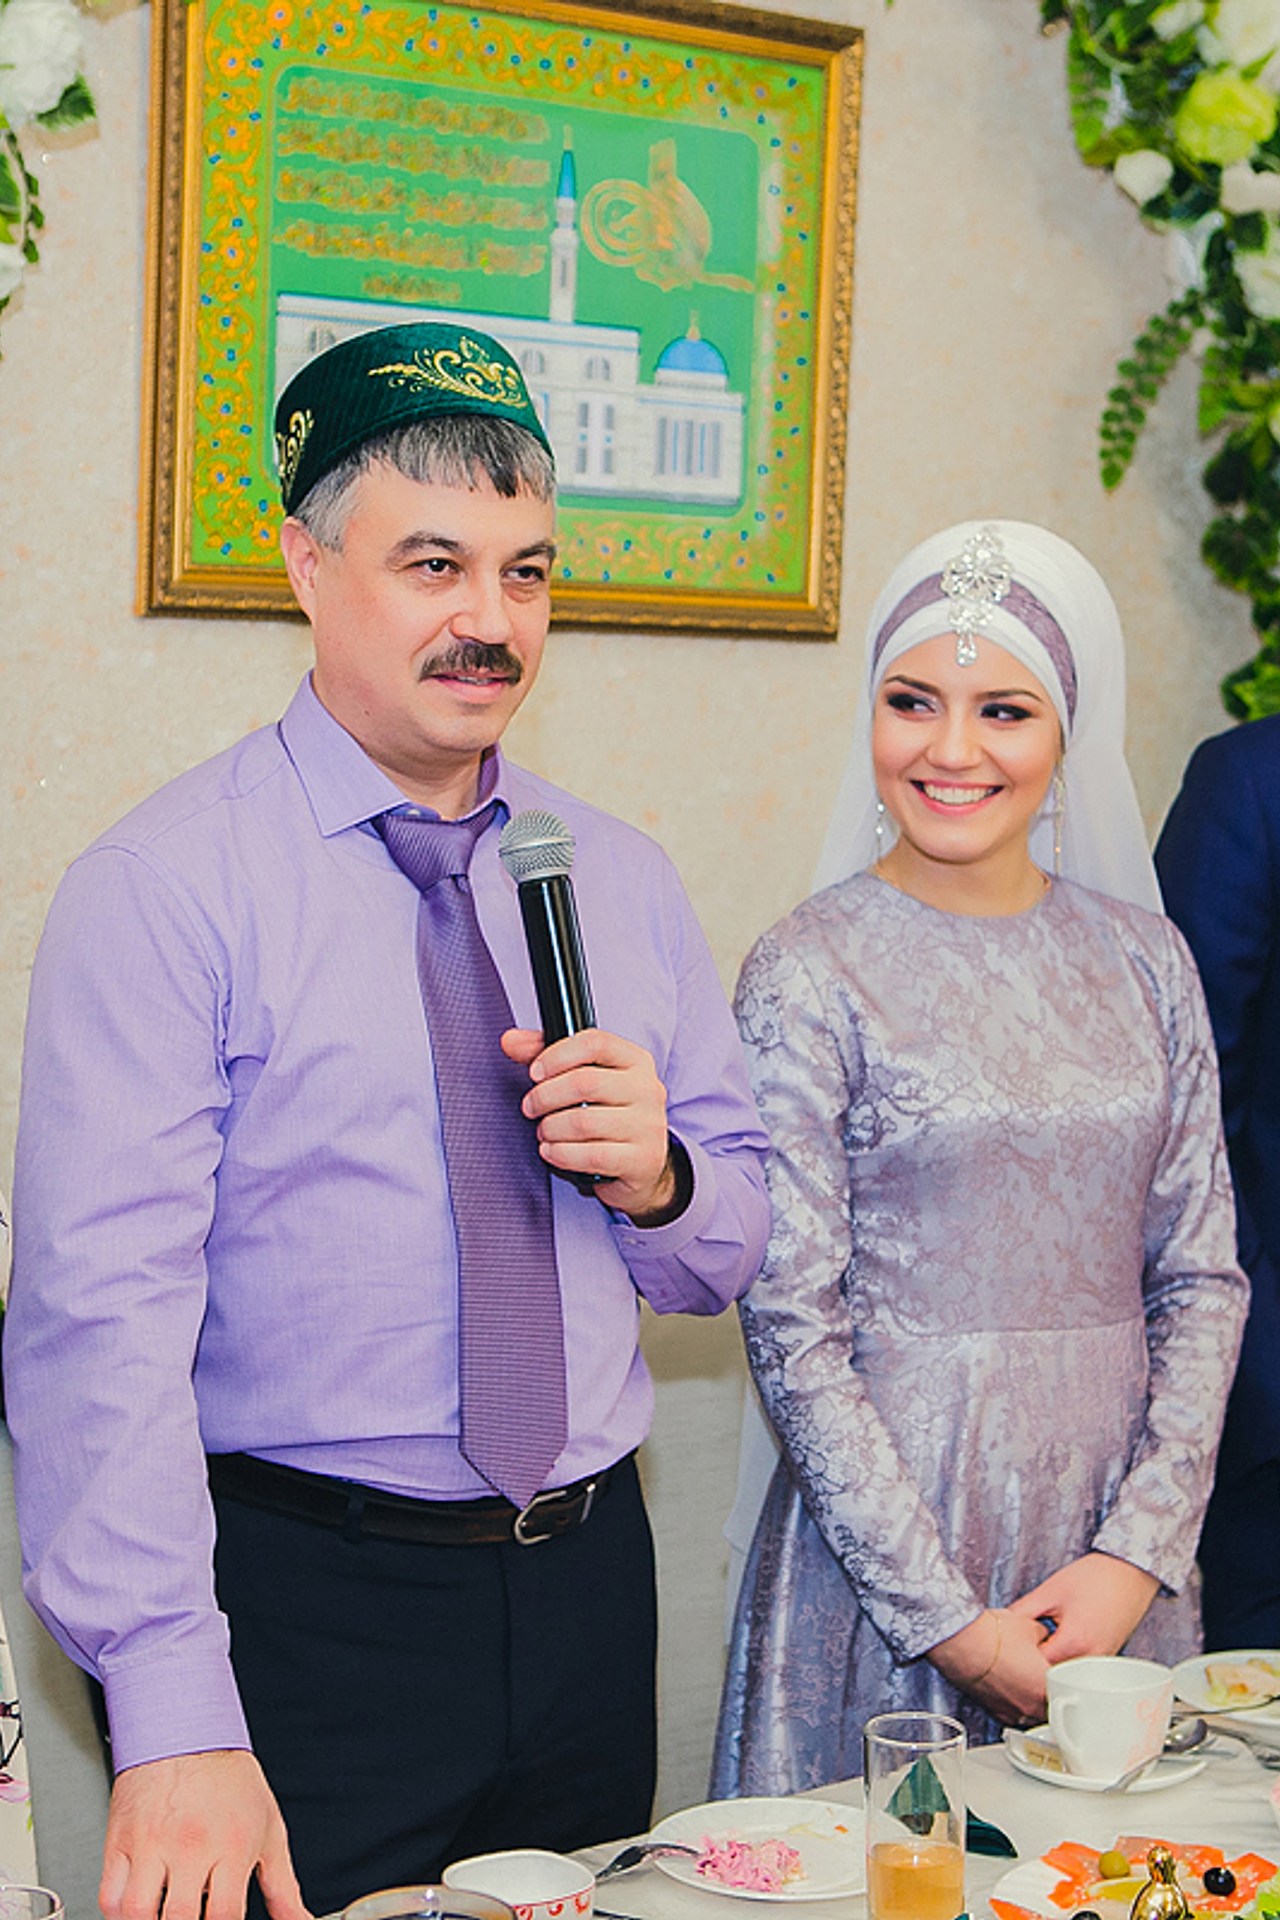 С днем рождения на татарском языке: 60 картинок